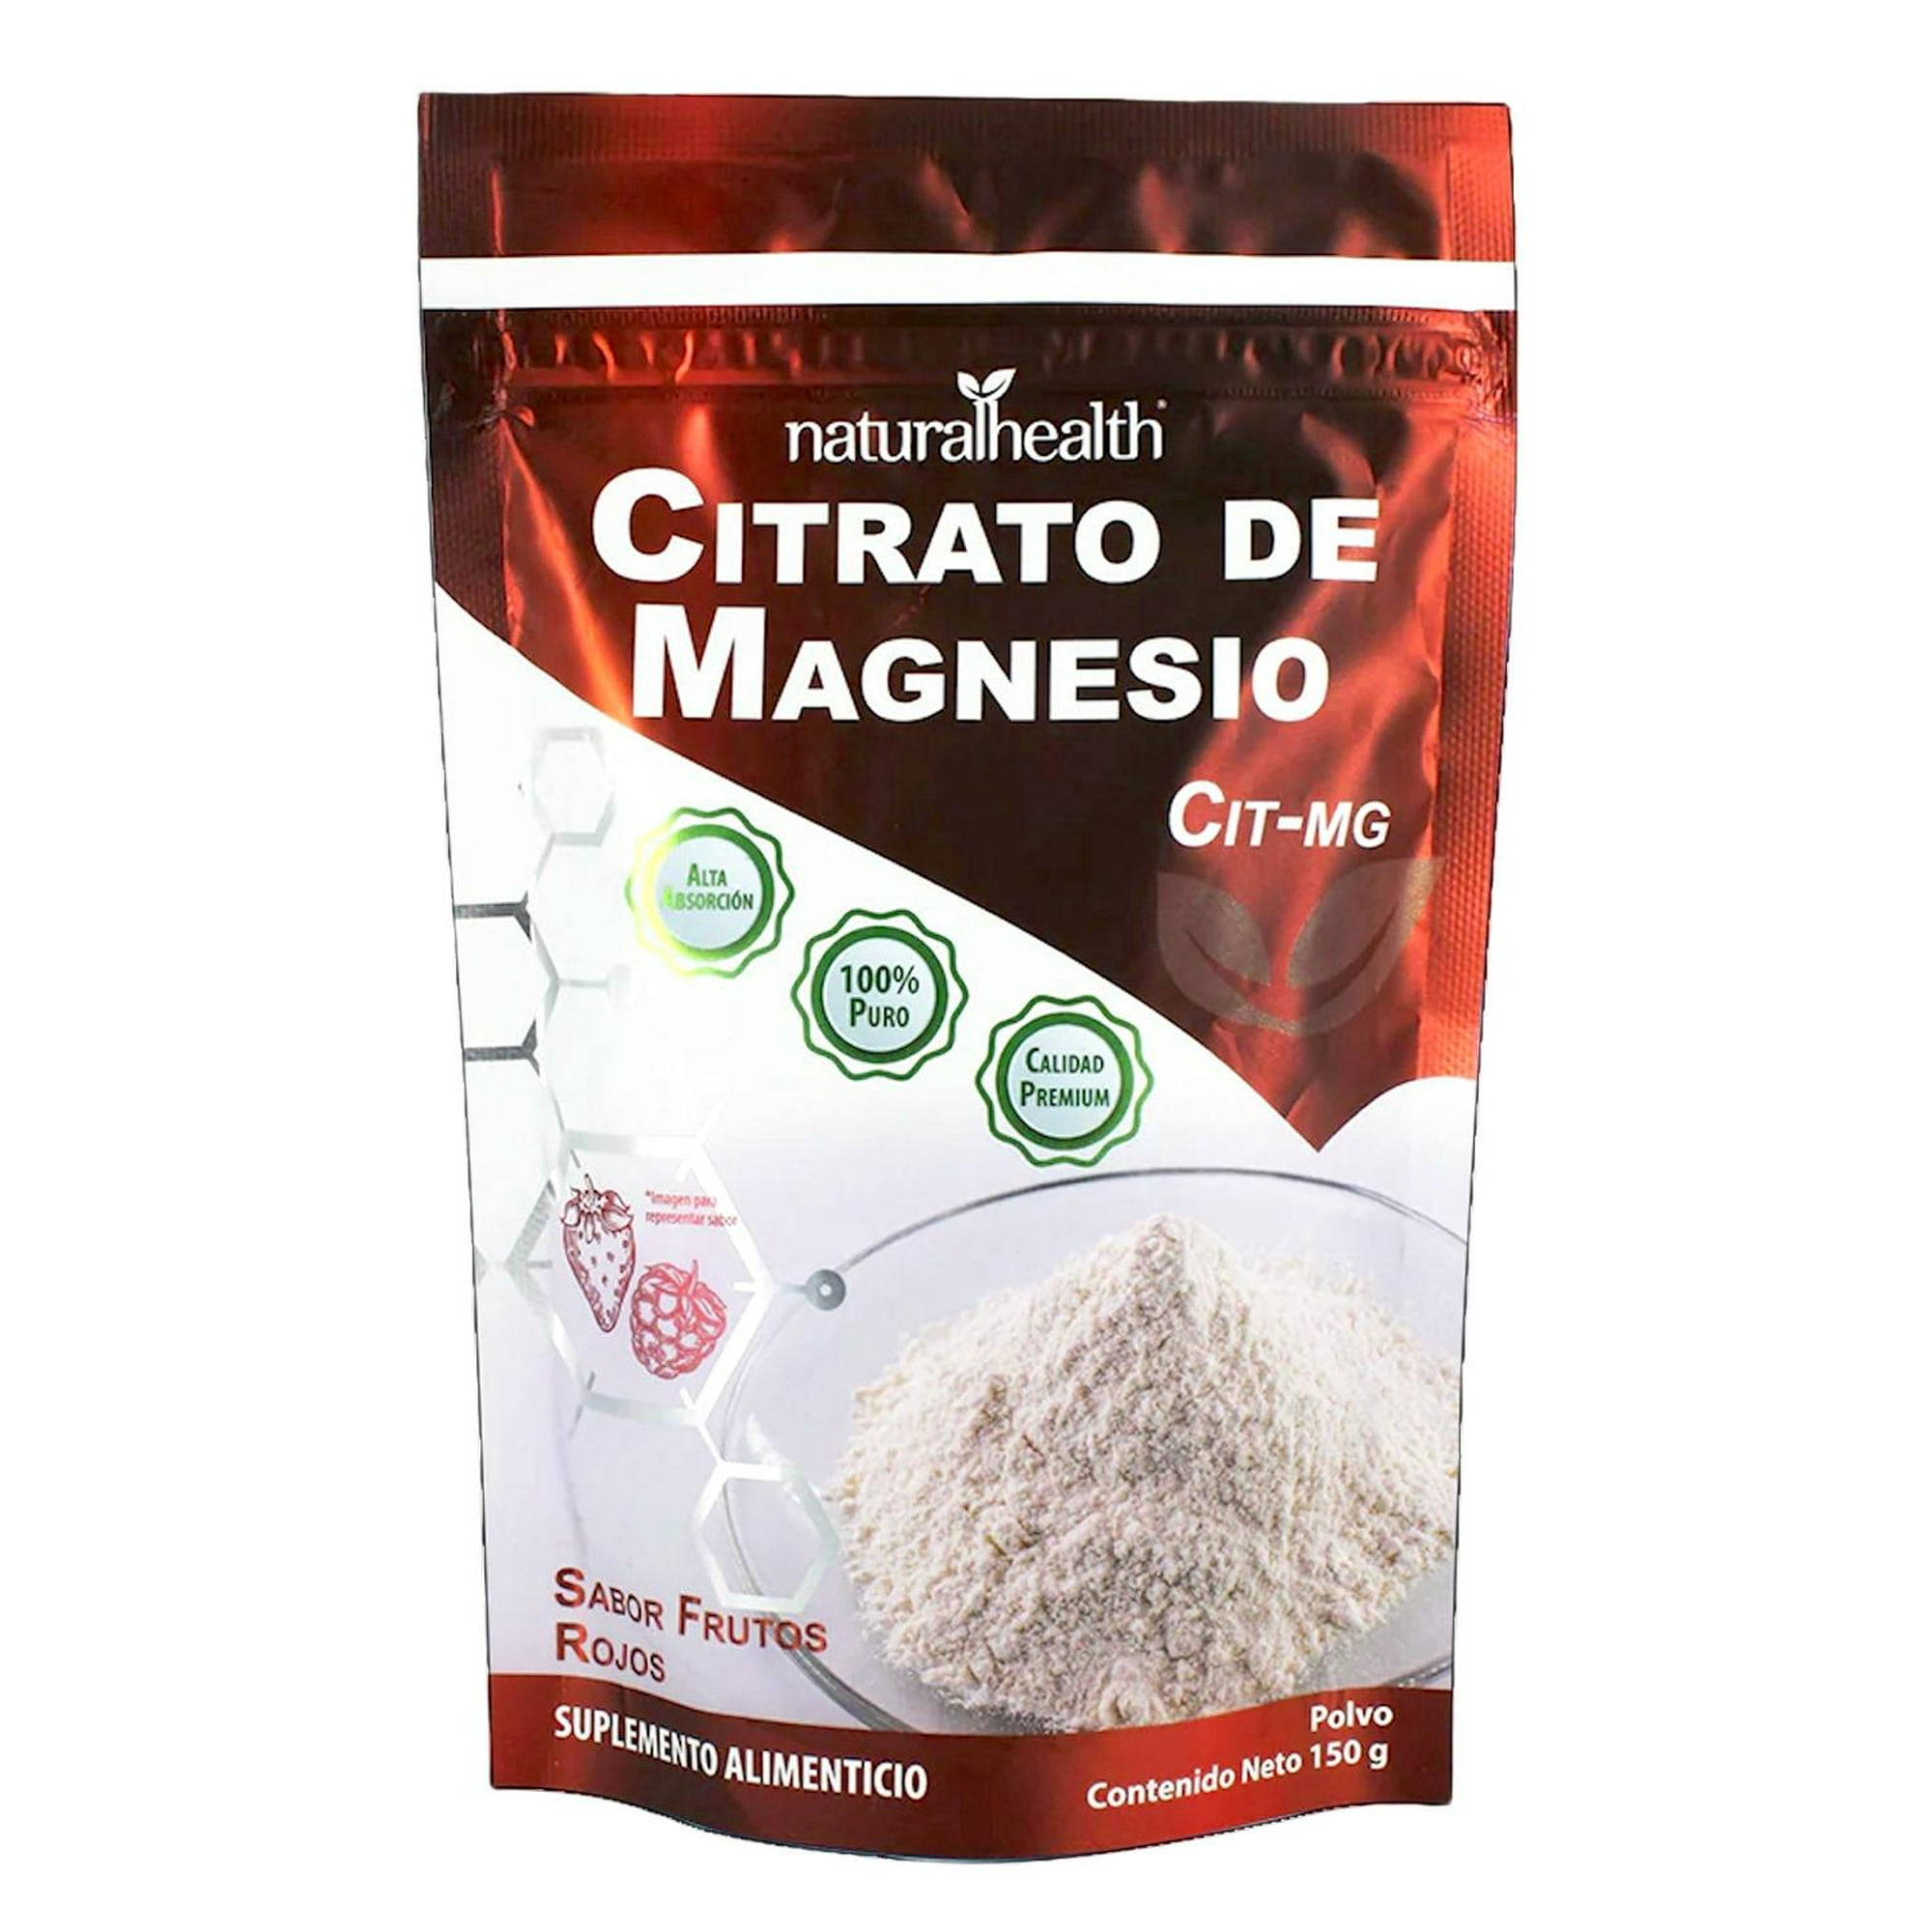 Citrato de magnesio 150 g frutos rojos natural health